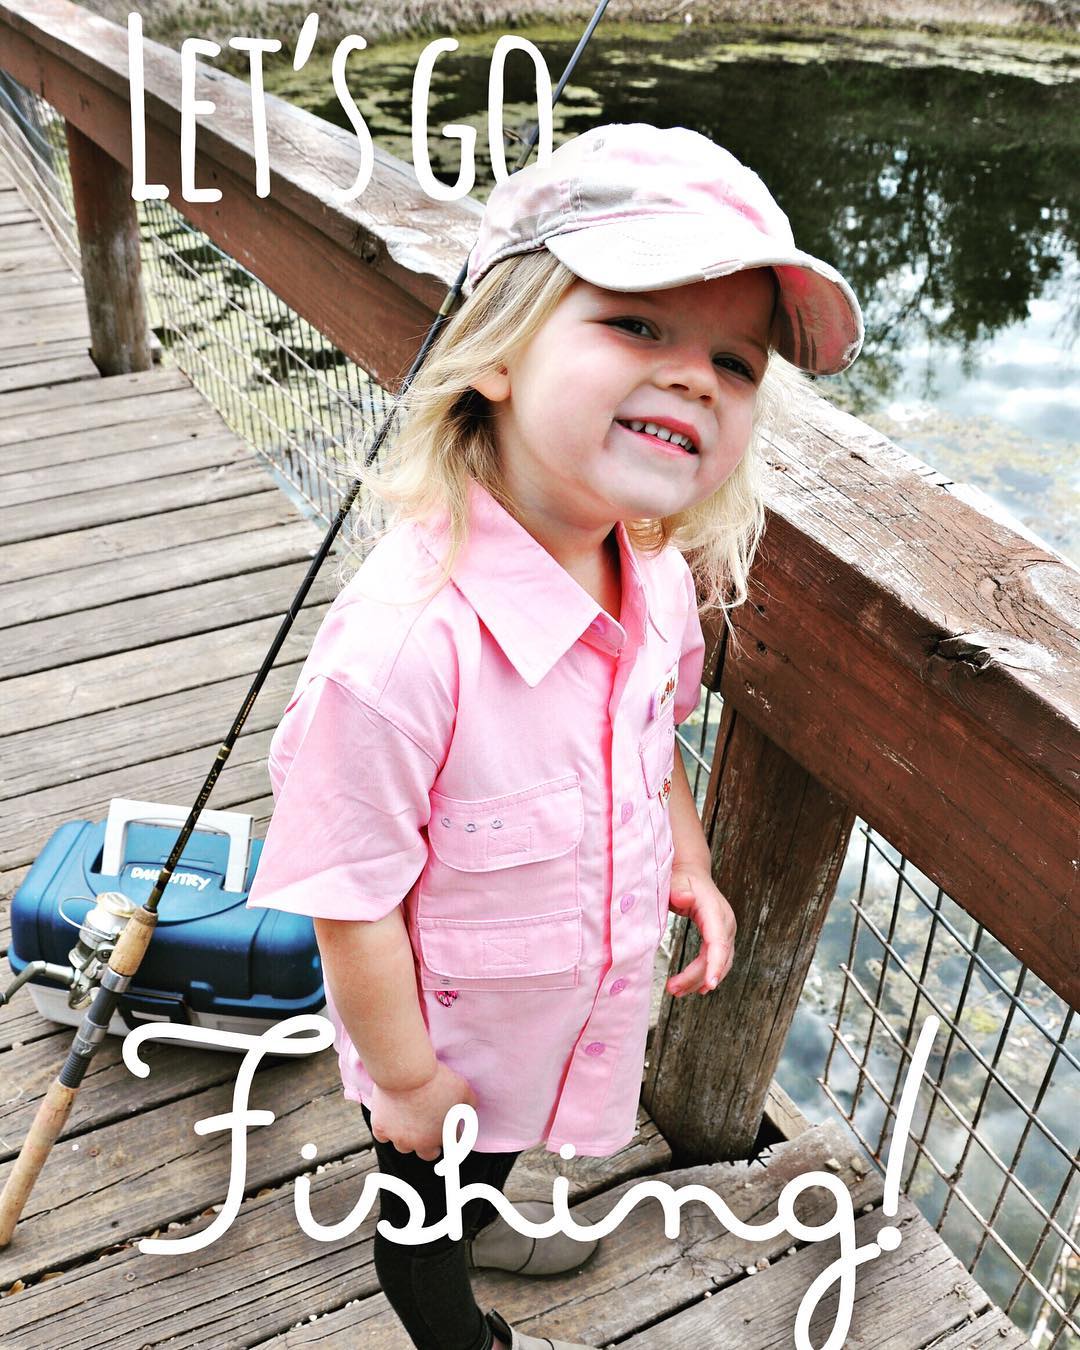 Kids Fishing Shirts - Fishing Shirts & Tops for Boys & Girls